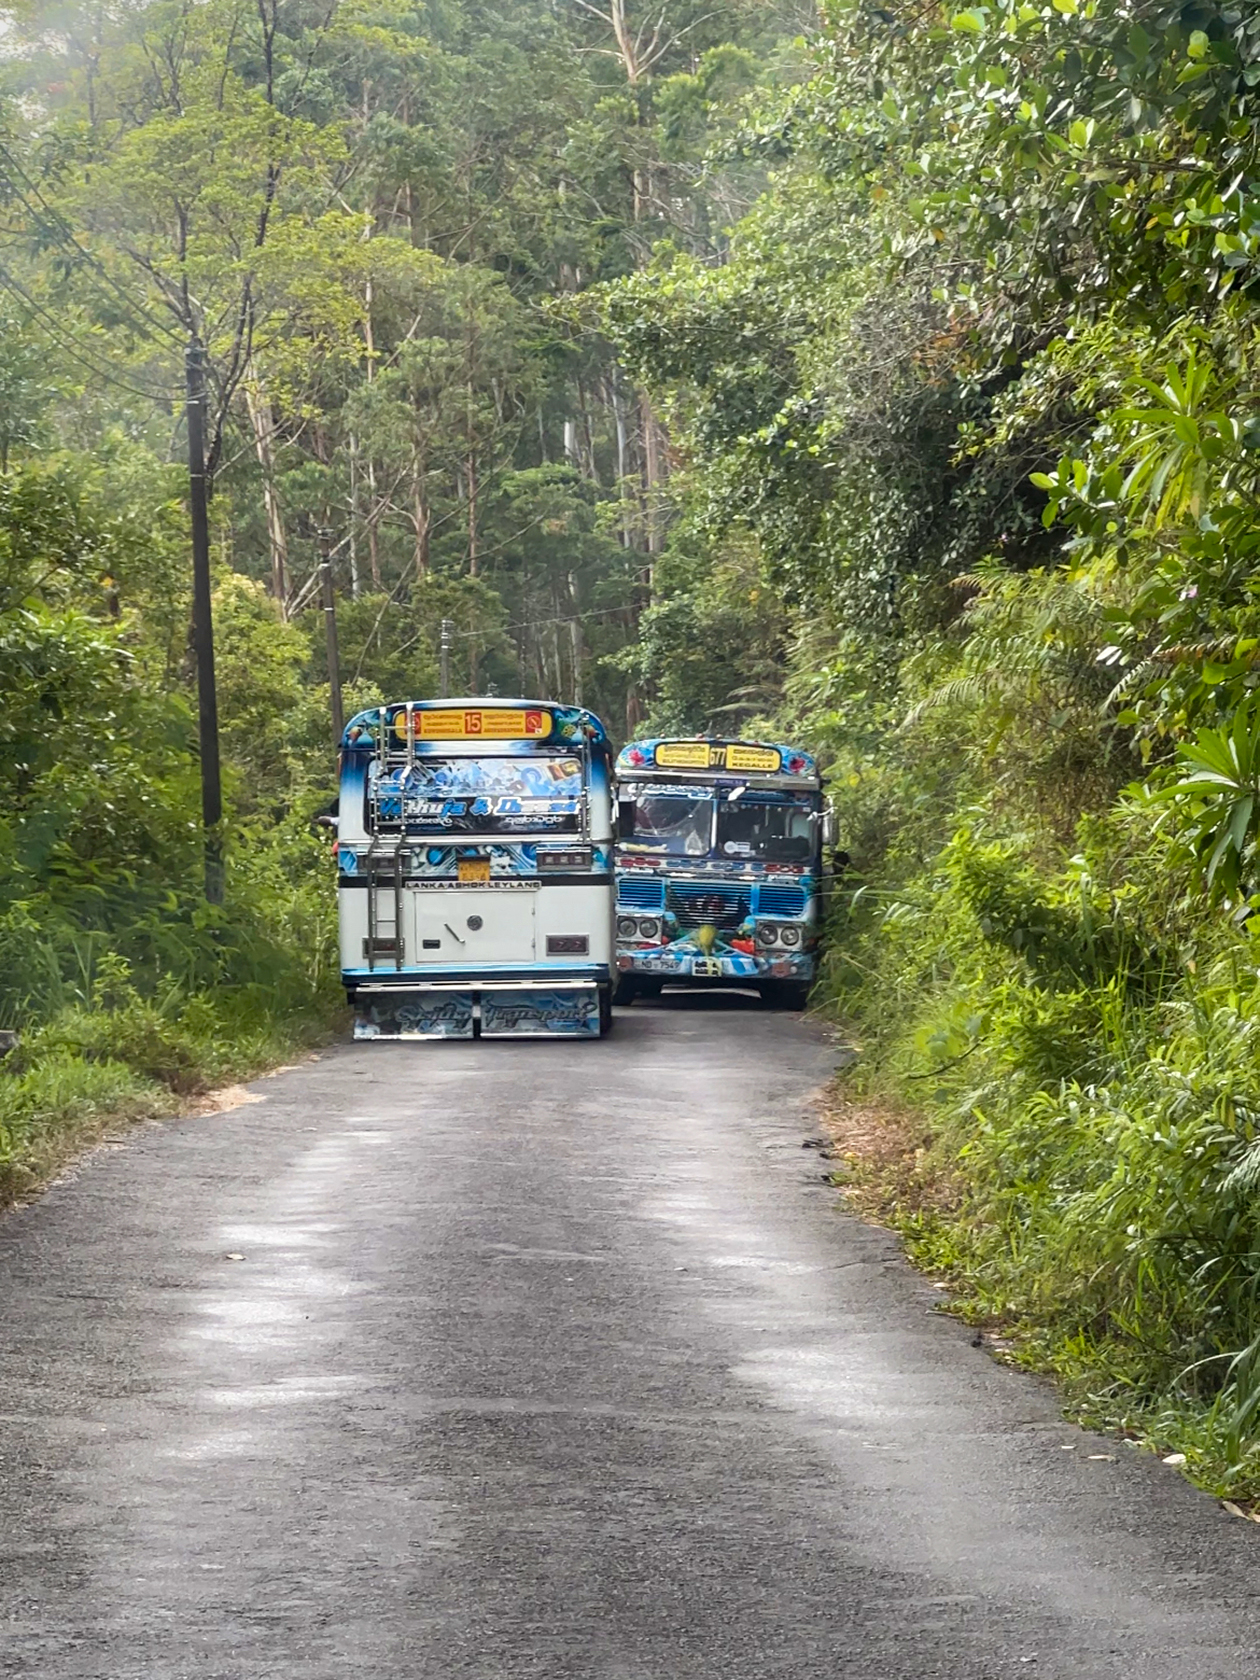 На Шри⁠-⁠Ланке некоторые дороги очень узкие, иногда двум автобусам на них не разъехаться. Мы часто попадали из⁠-⁠за этого в пробку и ждали, пока водители найдут выход из ситуации